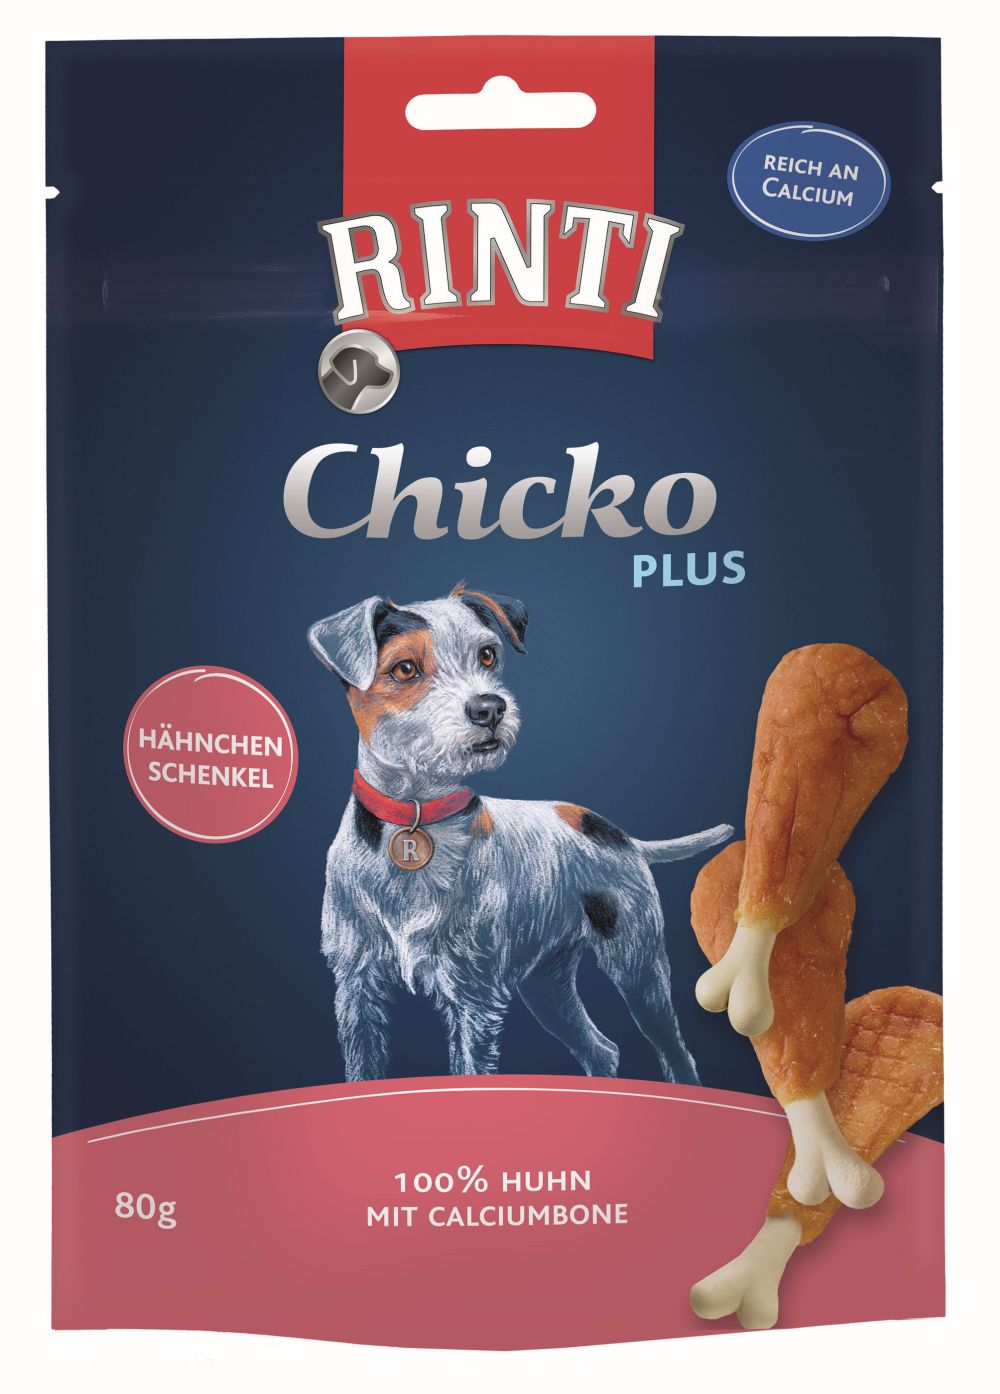 Rinti Extra Chicko Plus Hähnchenschenkel mit Calciumbone 80g | em-ma